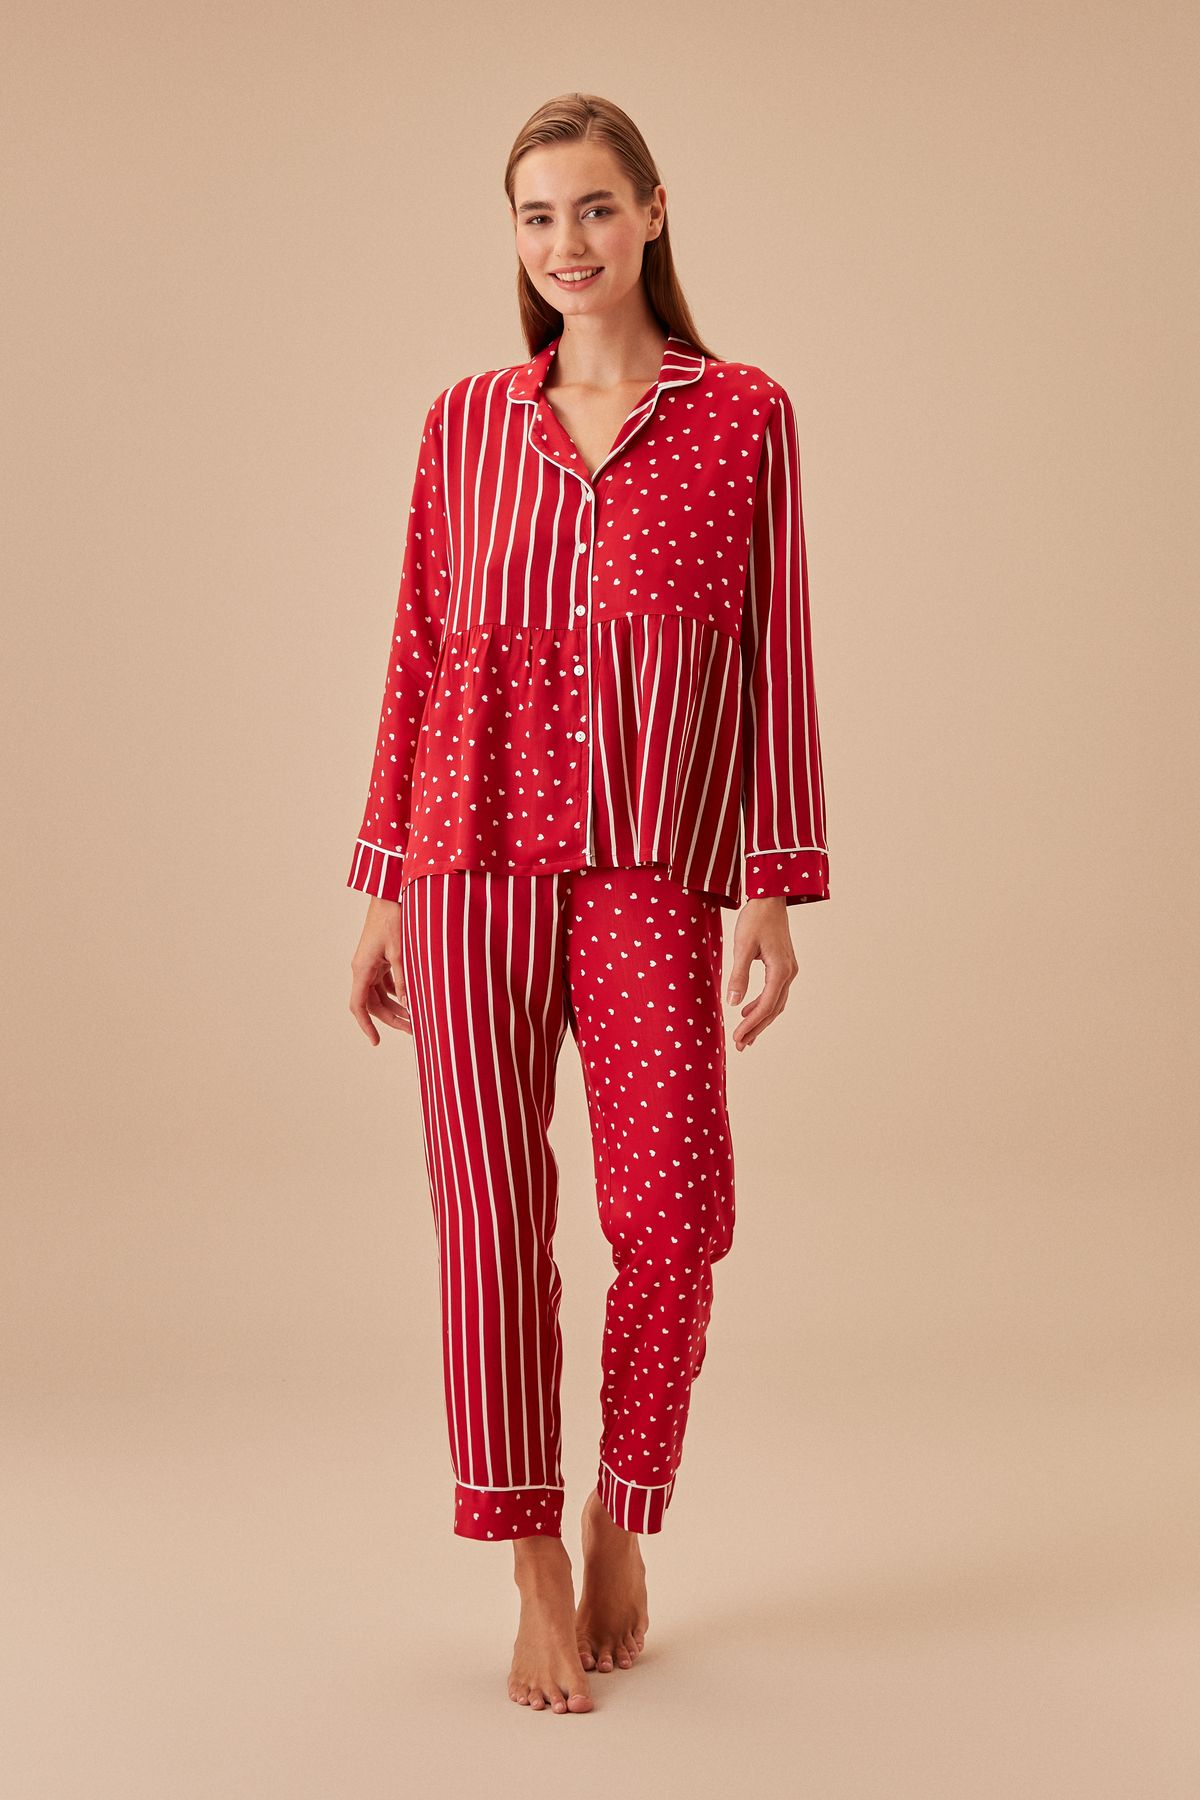 Suwen Maya Maskülen Pijama Takımı